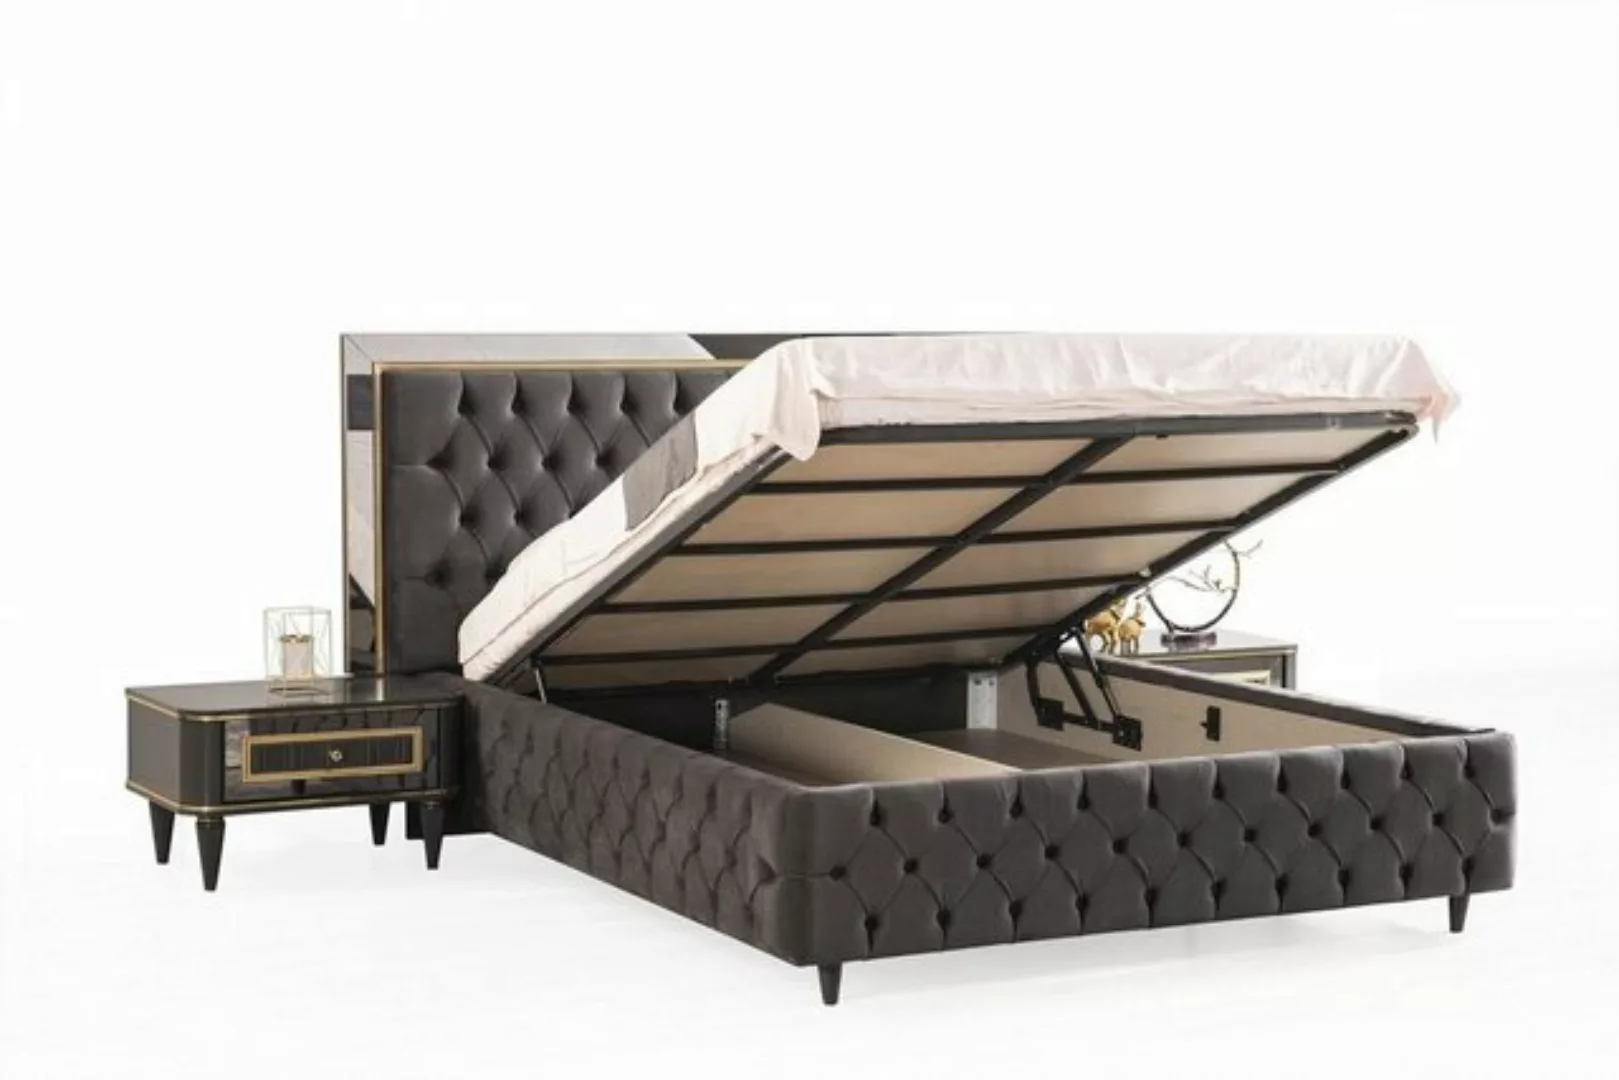 JVmoebel Bett Luxus Chesterfield Bett mit Edelstahl Rahmen Edle Betten Schw günstig online kaufen